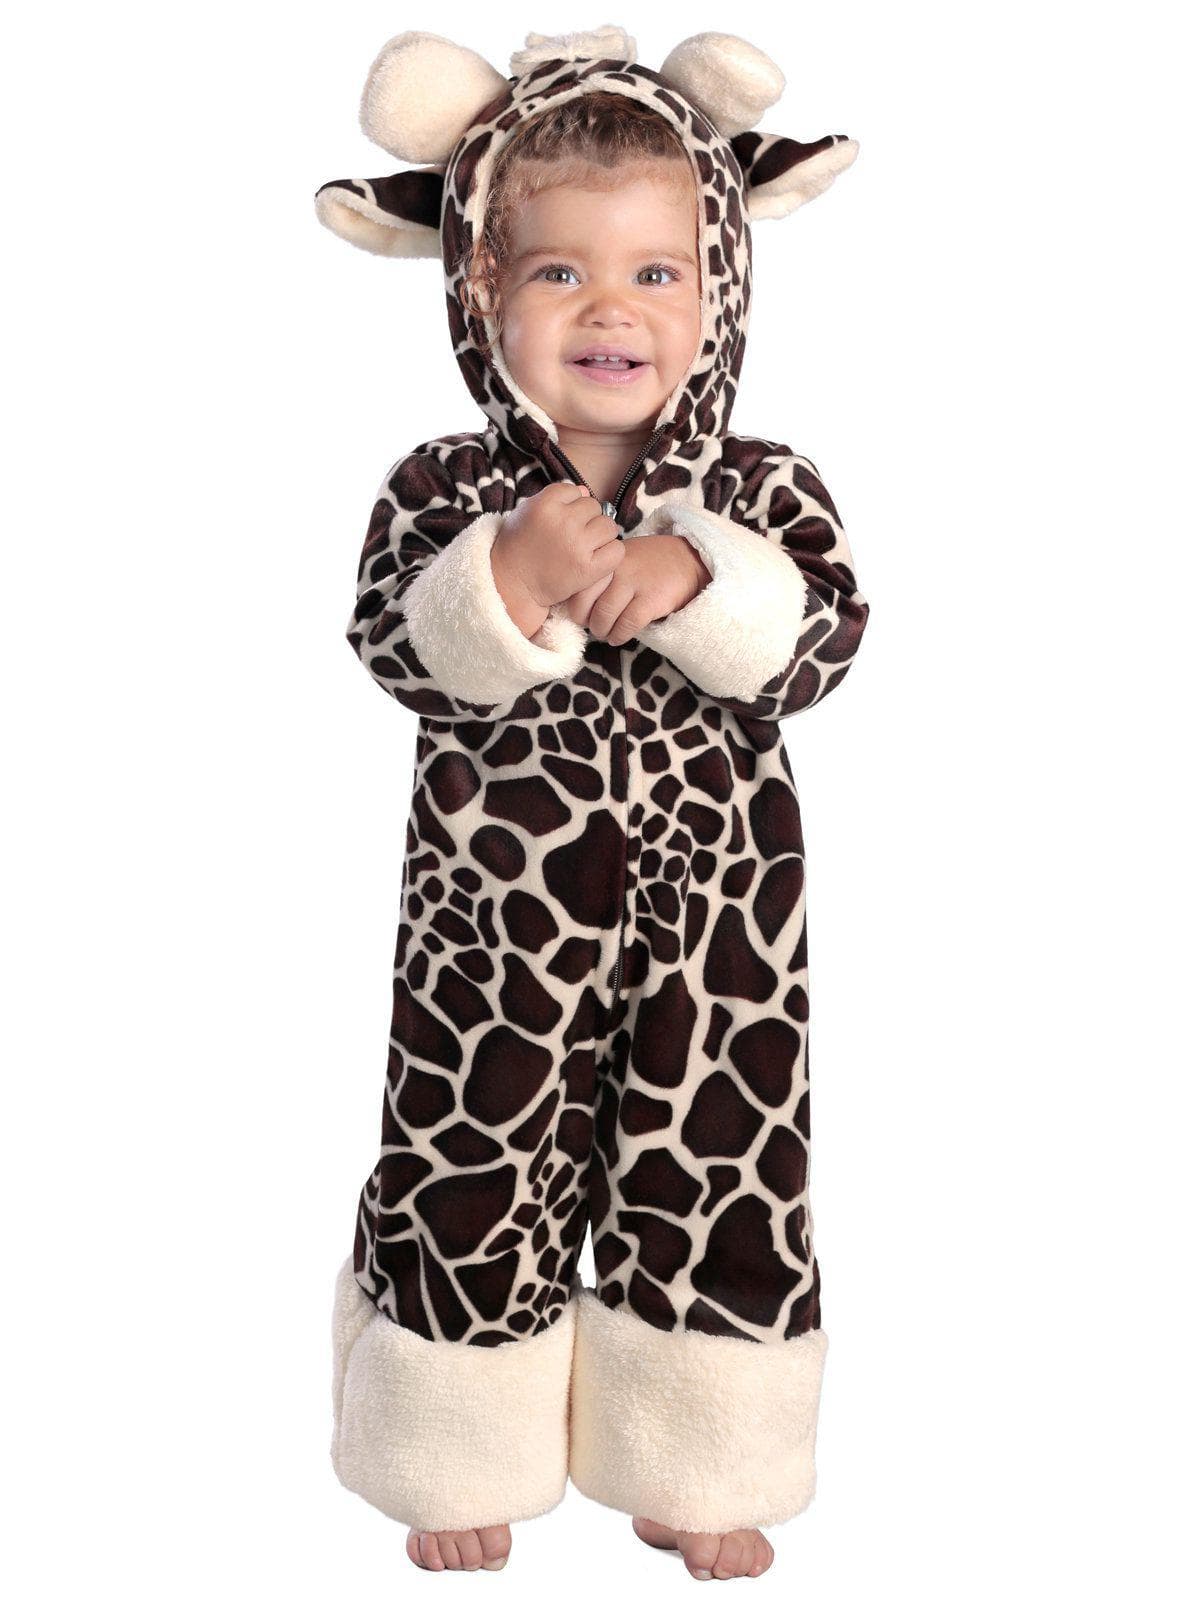 Baby/Toddler Baby Giraffe Costume - costumes.com